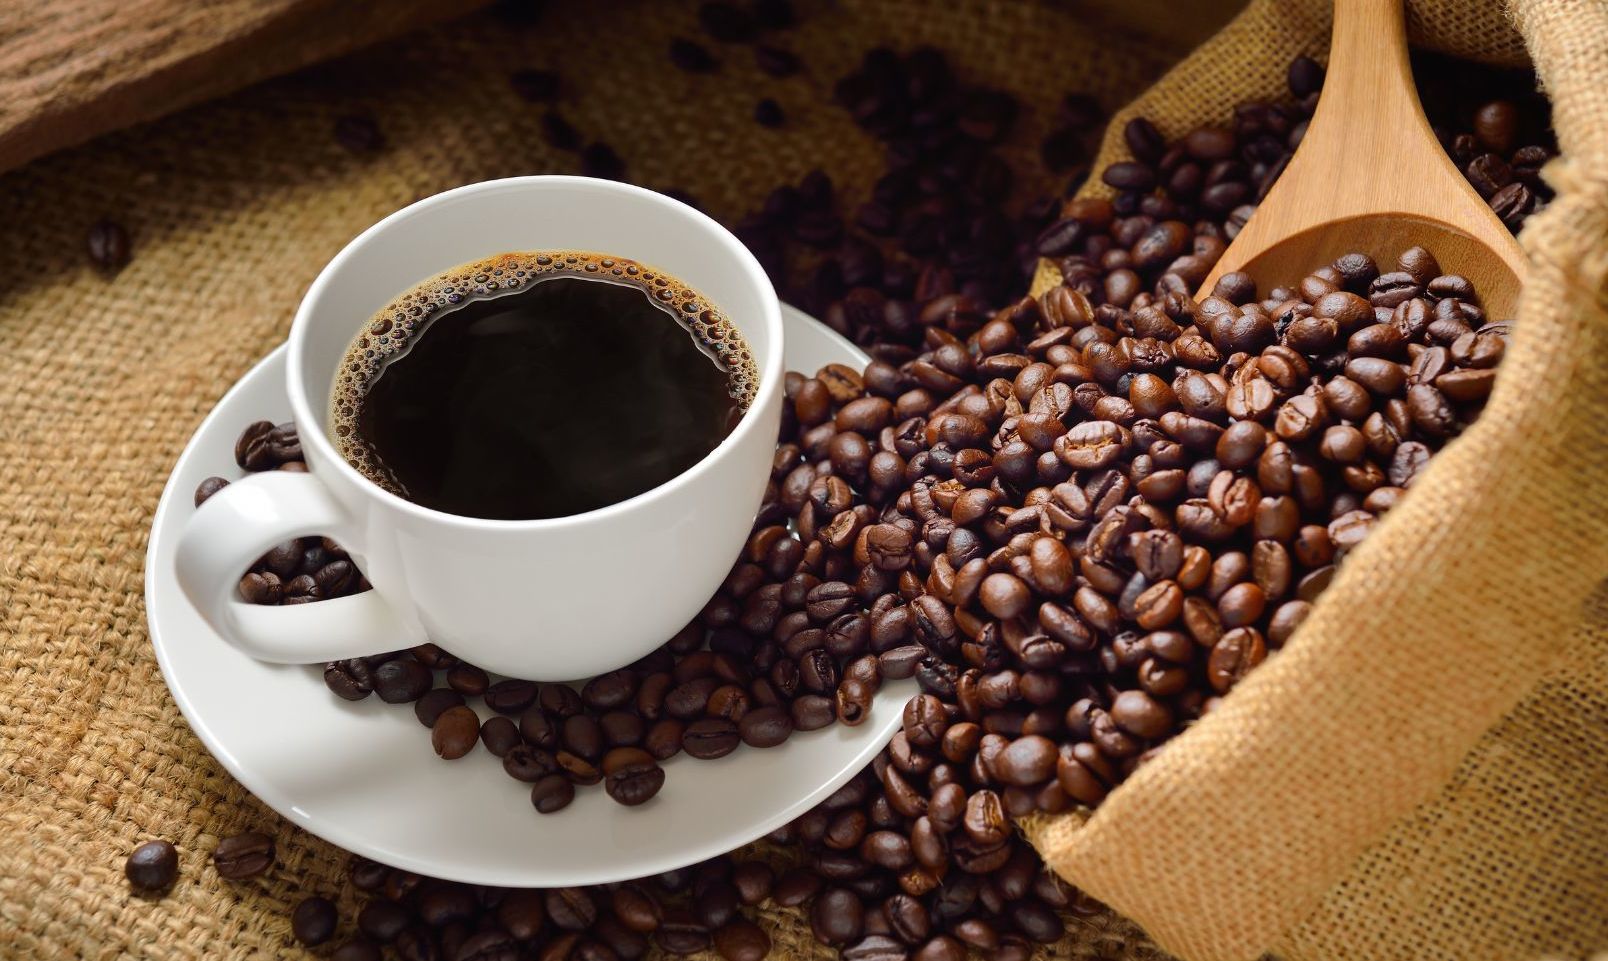 "El café: producto beneficioso, en su justa medida"